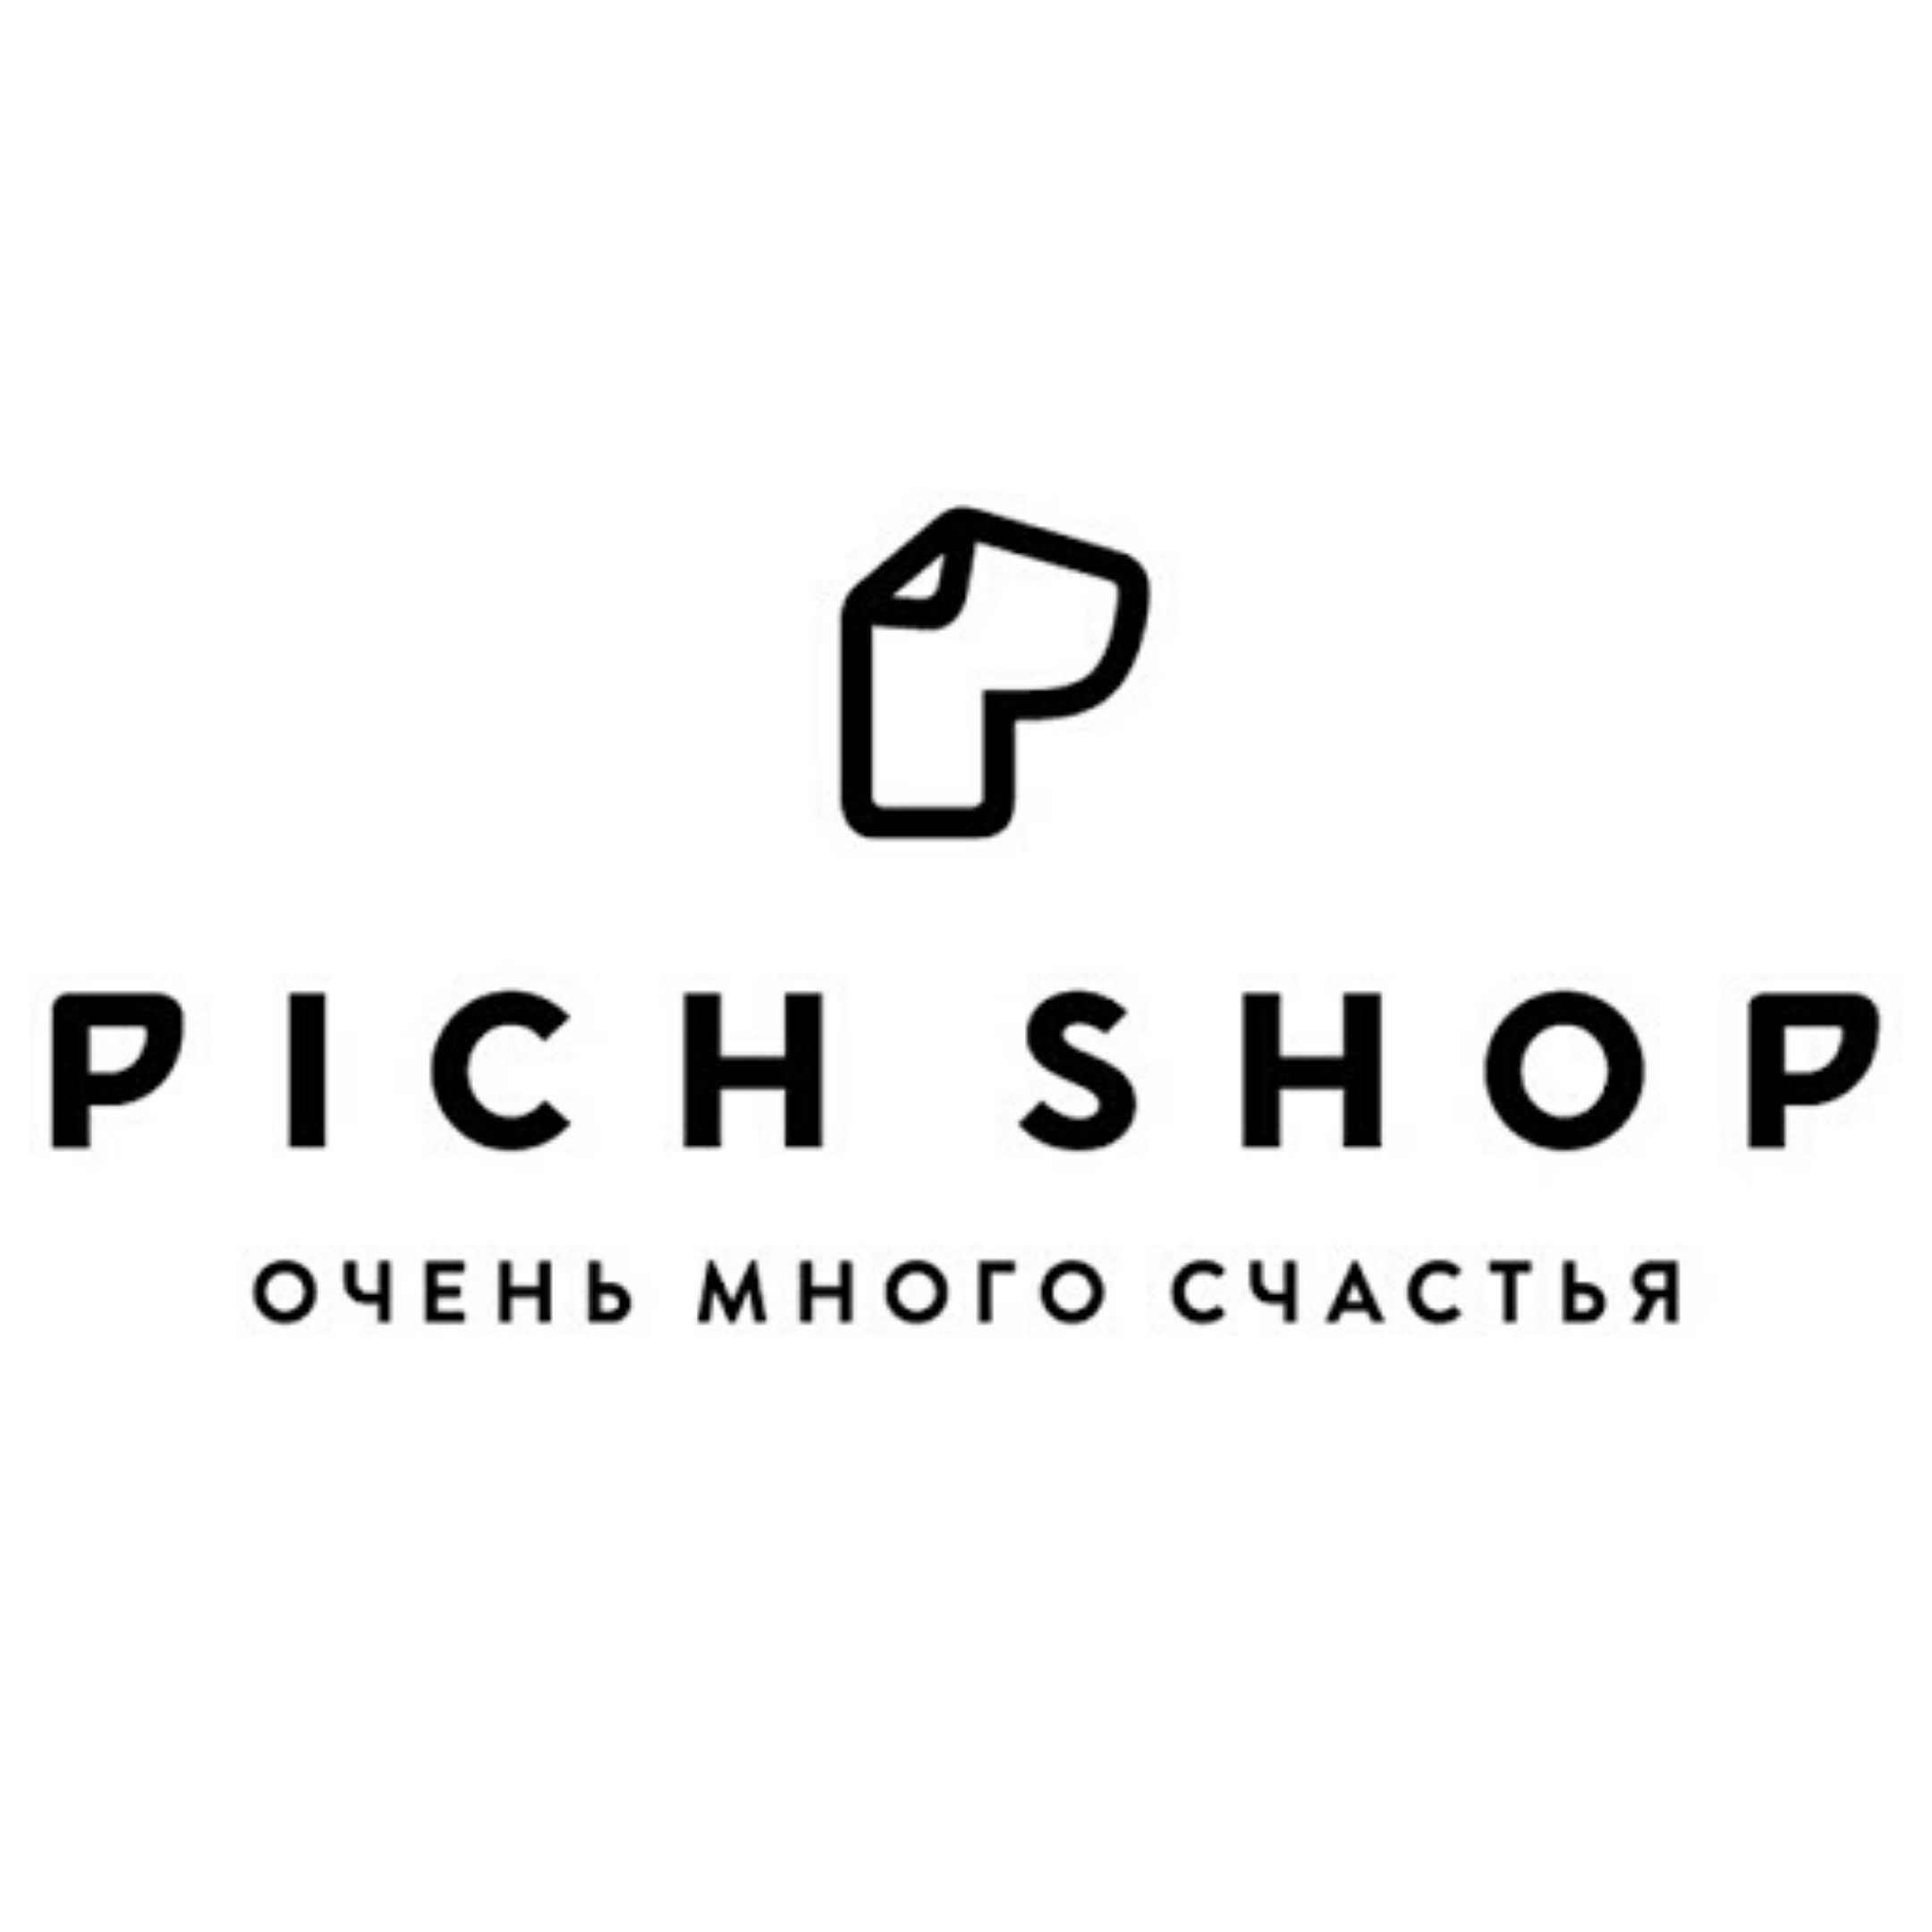 Pichshop